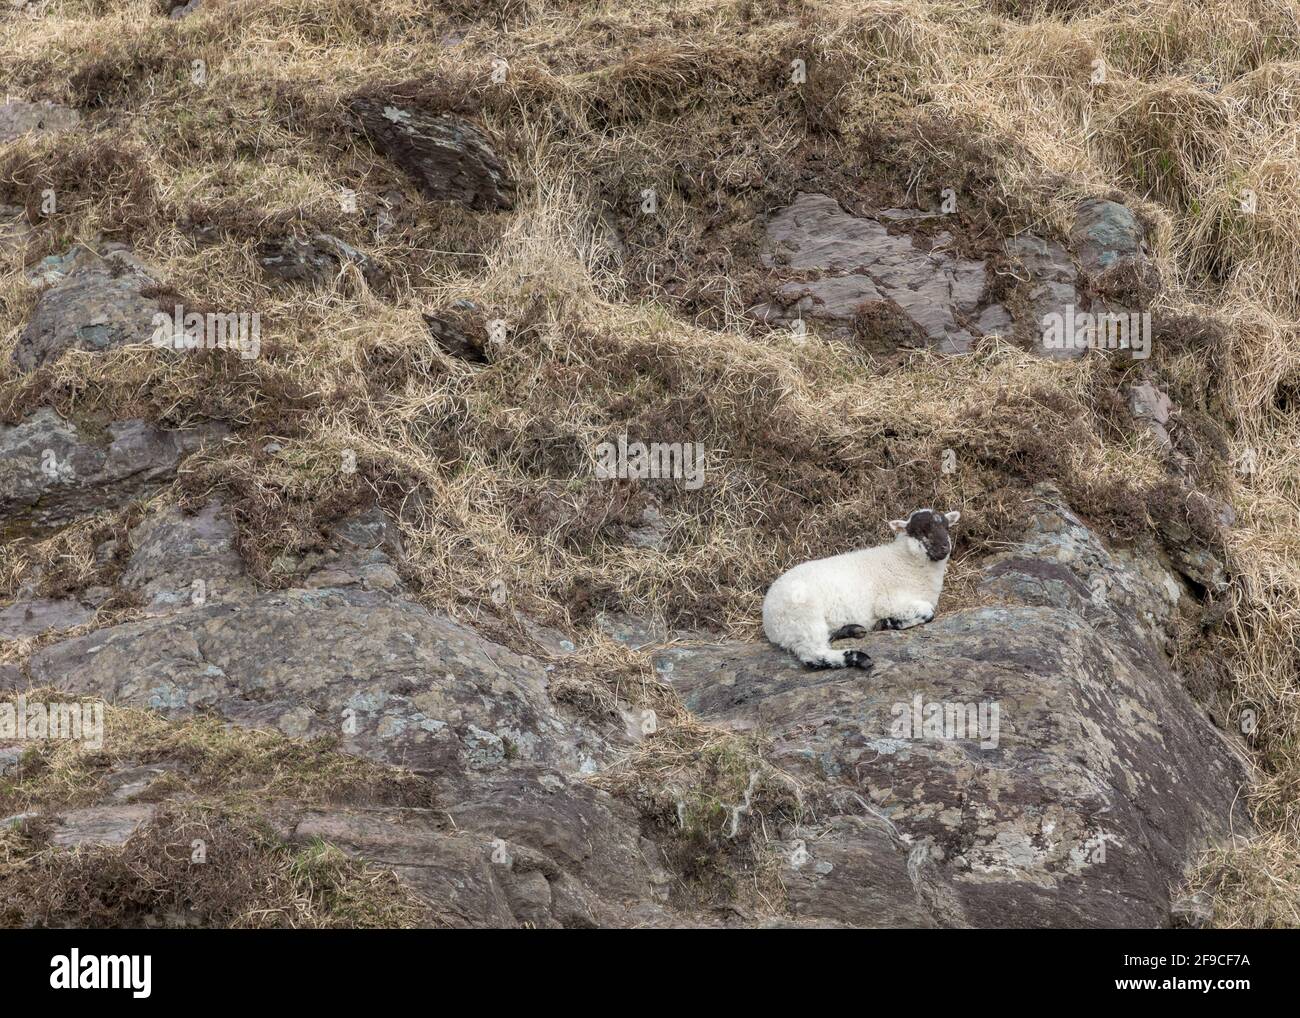 Vallée de Mealagh, Bantry, Cork, Irlande. 17 avril 2021. Un jeune agneau prend un repos sur la montagne dans la vallée de Mealagh, Bantry, Co. Cork, Irlande. - crédit; David Creedon / Alamy Live News Banque D'Images